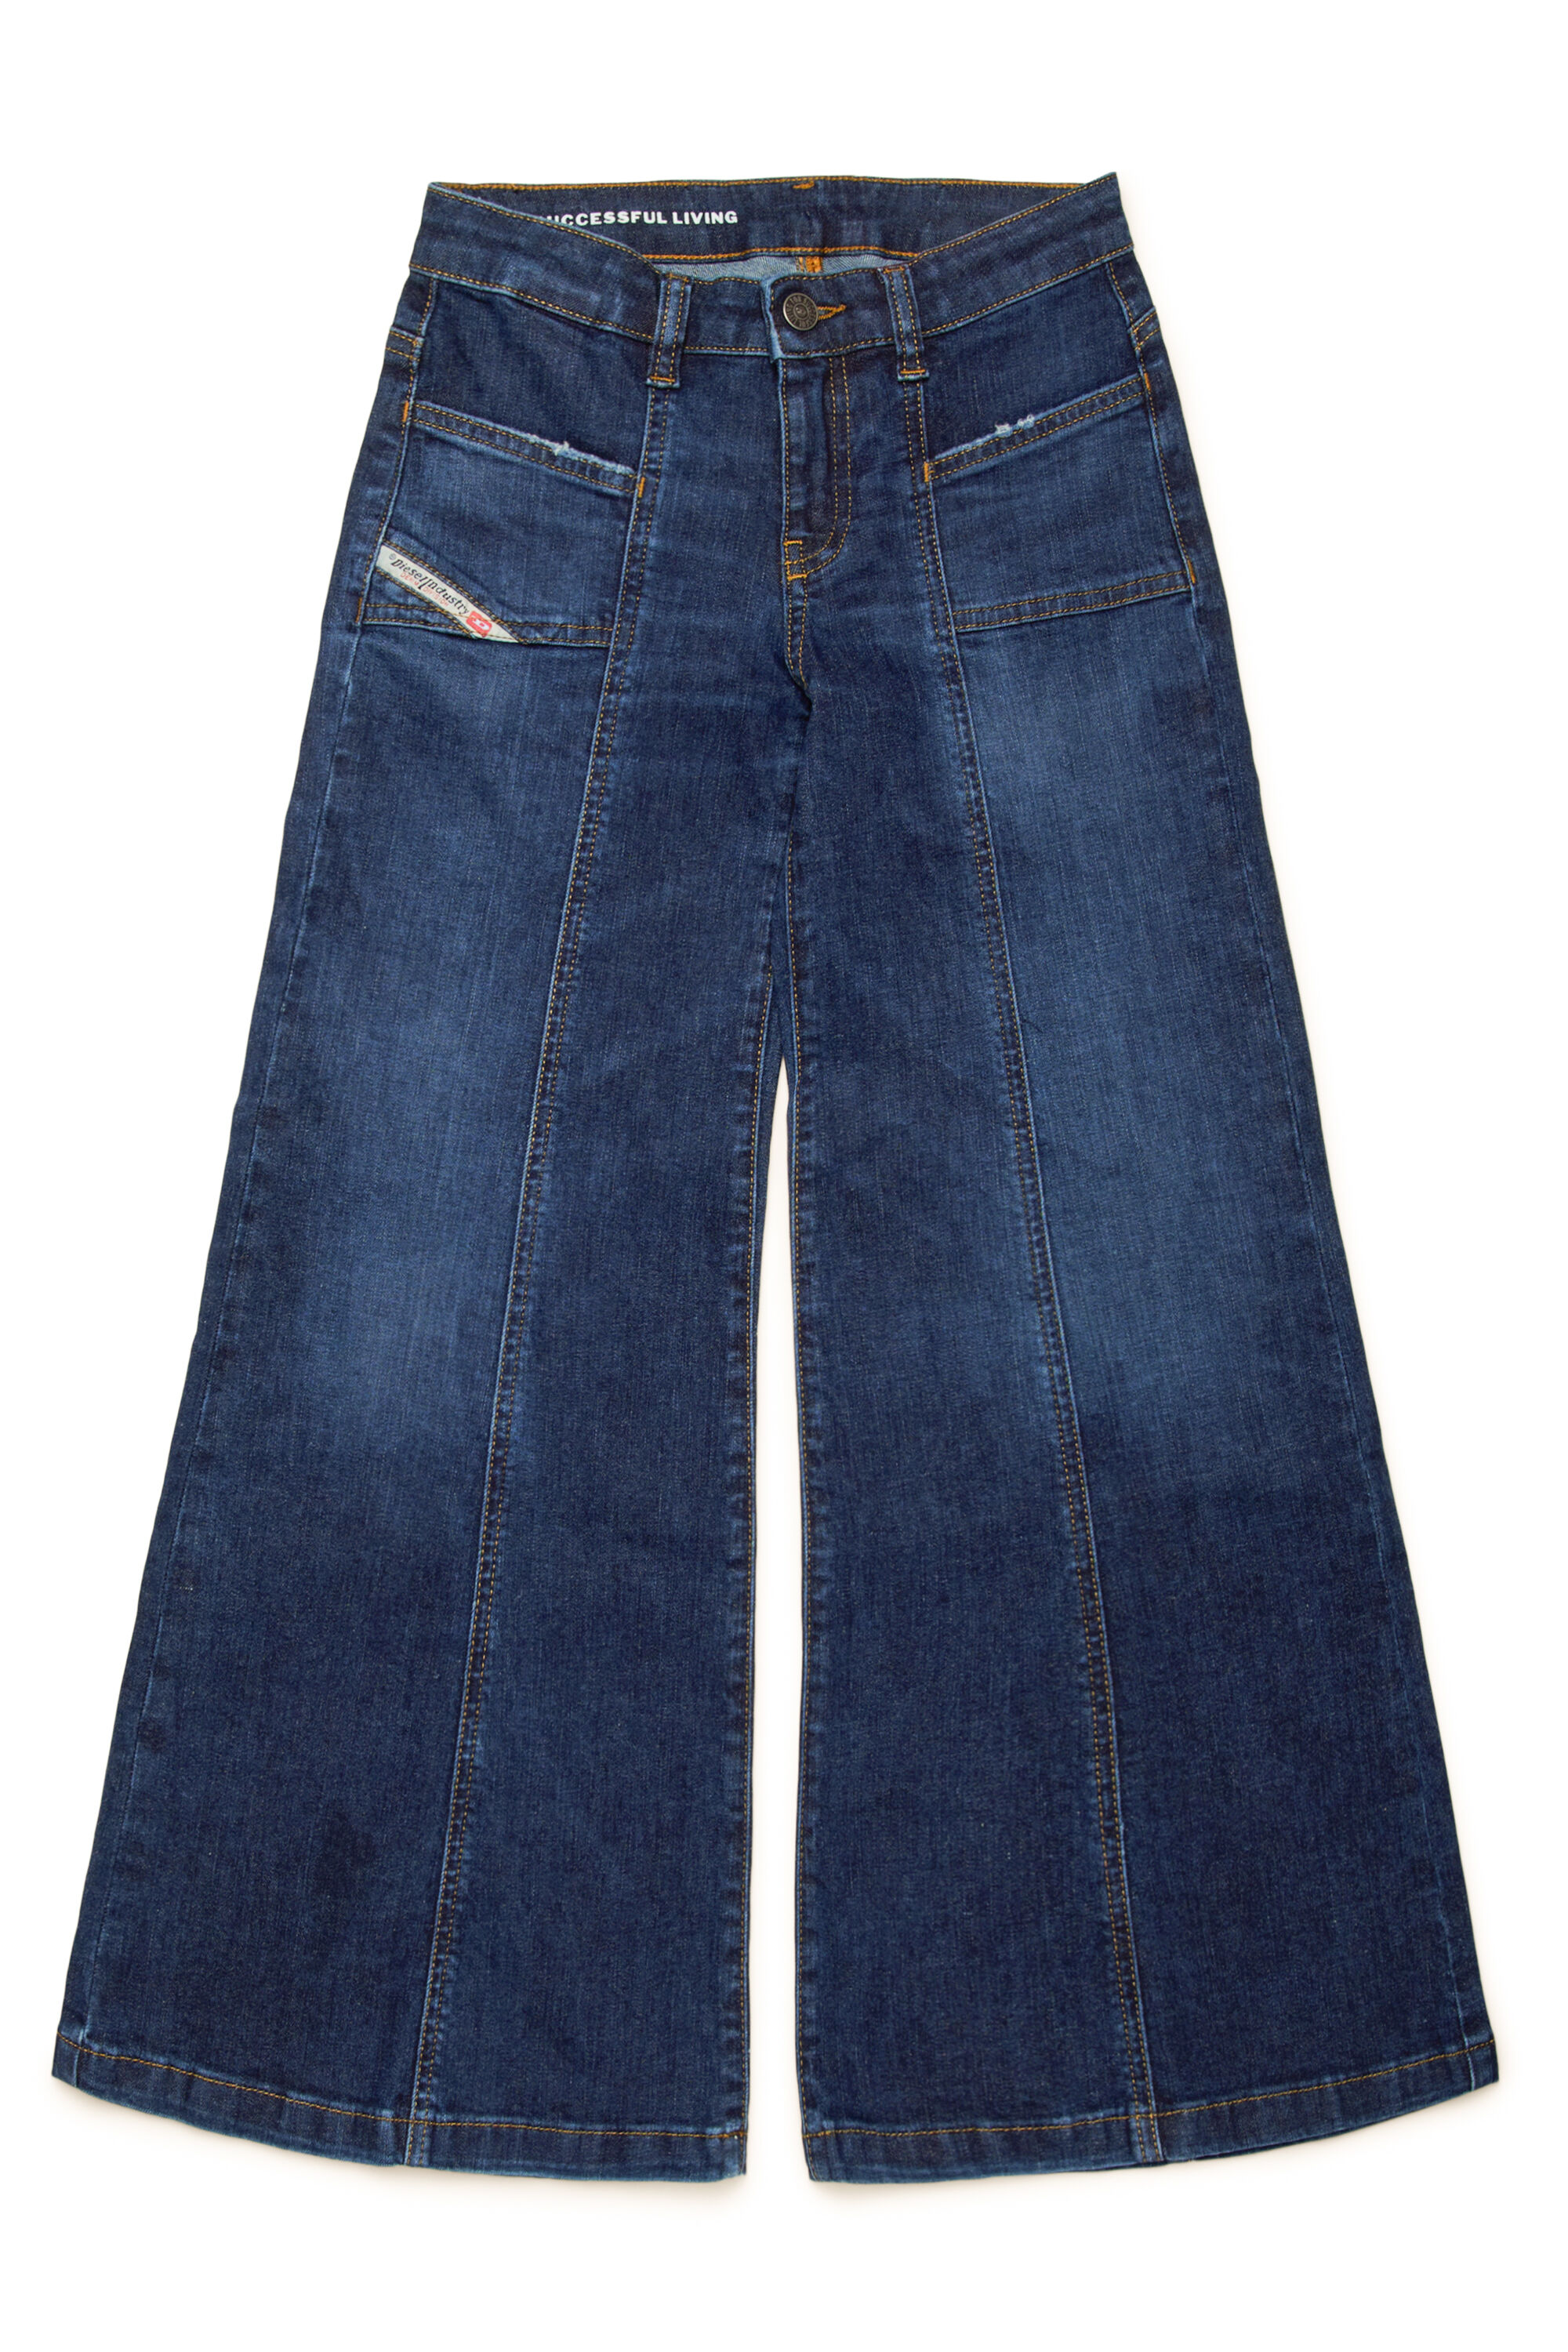 Diesel - D-AKII-J, Mujer Slim Jeans - D-Akii in Azul marino - Image 1